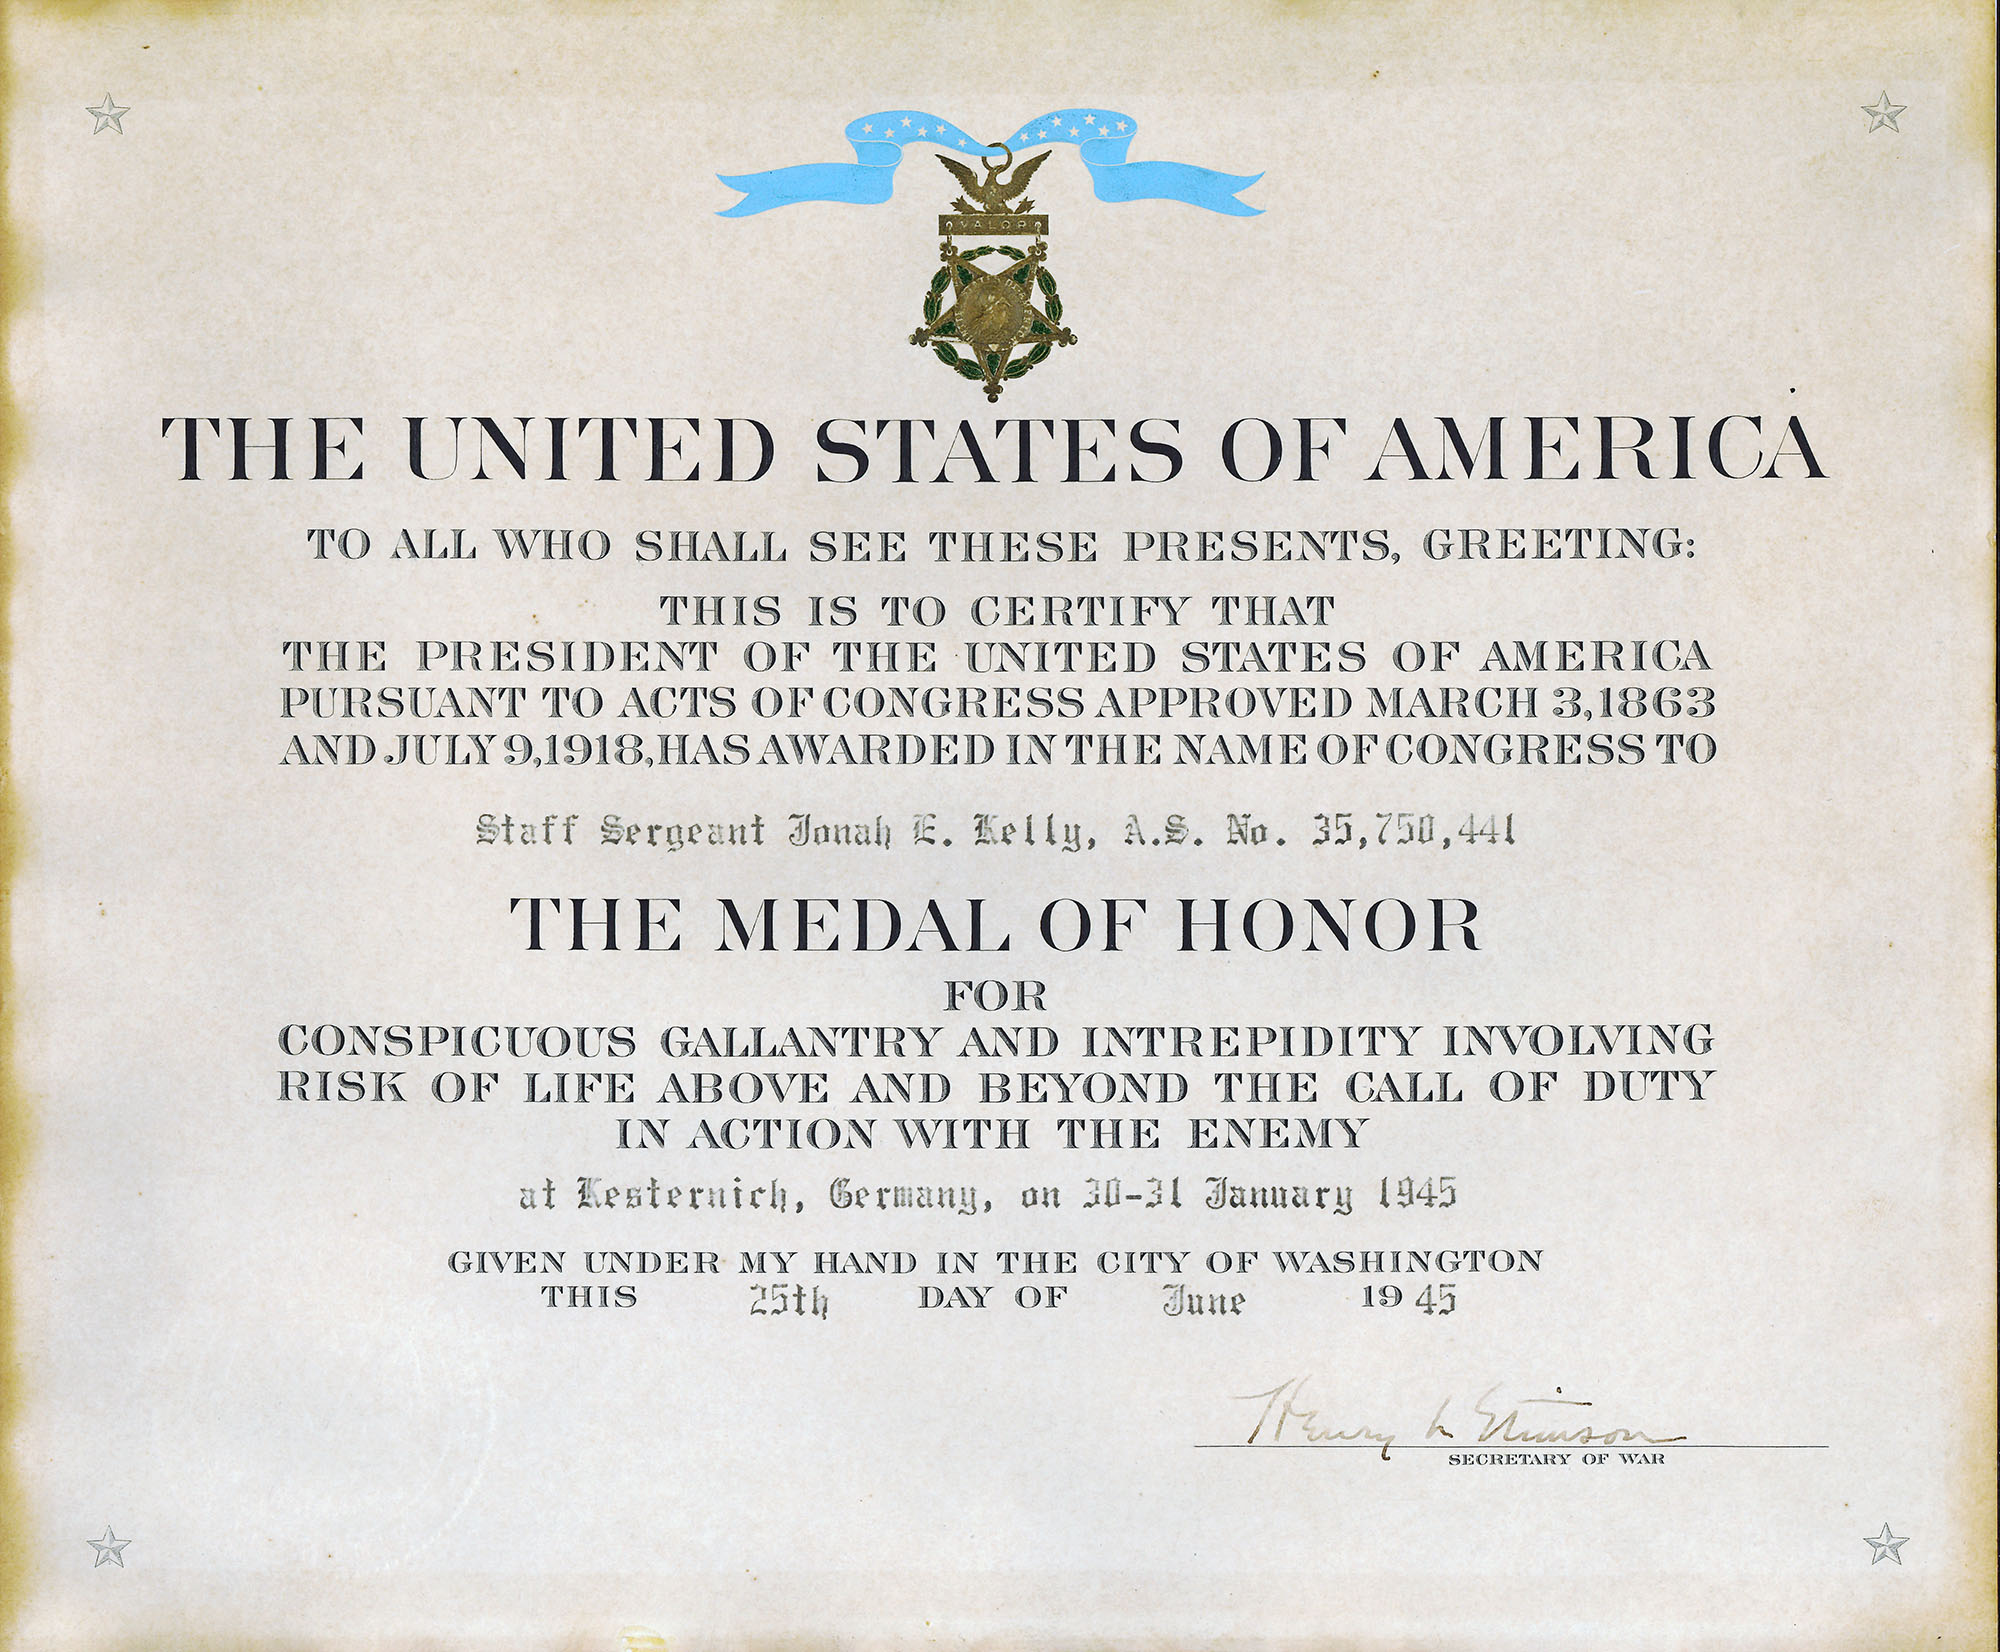 Jonah E Kelley Medal of Honor Citation